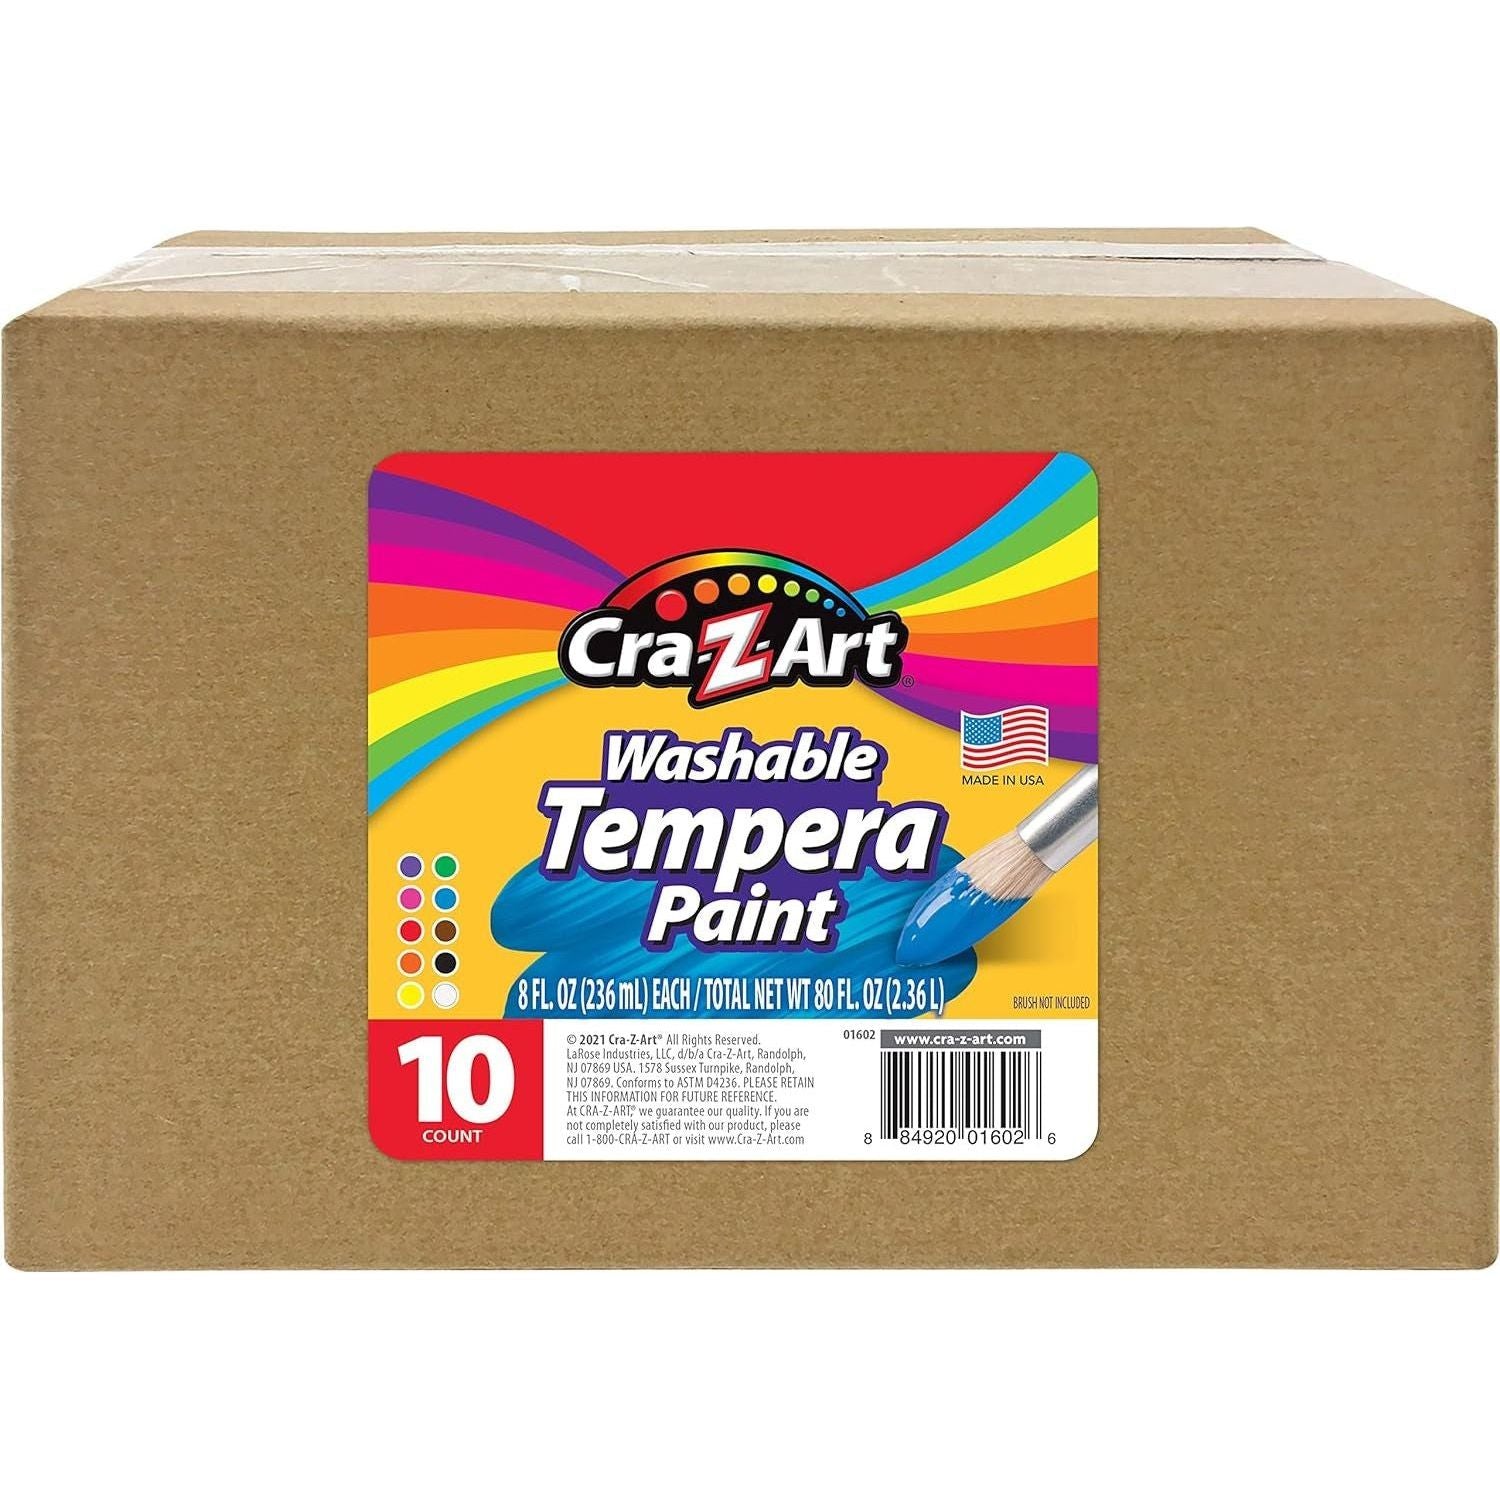 Washable Tempera Paint Bulk Pack 10Ct, Assorted Colors 8Oz Each Bottle